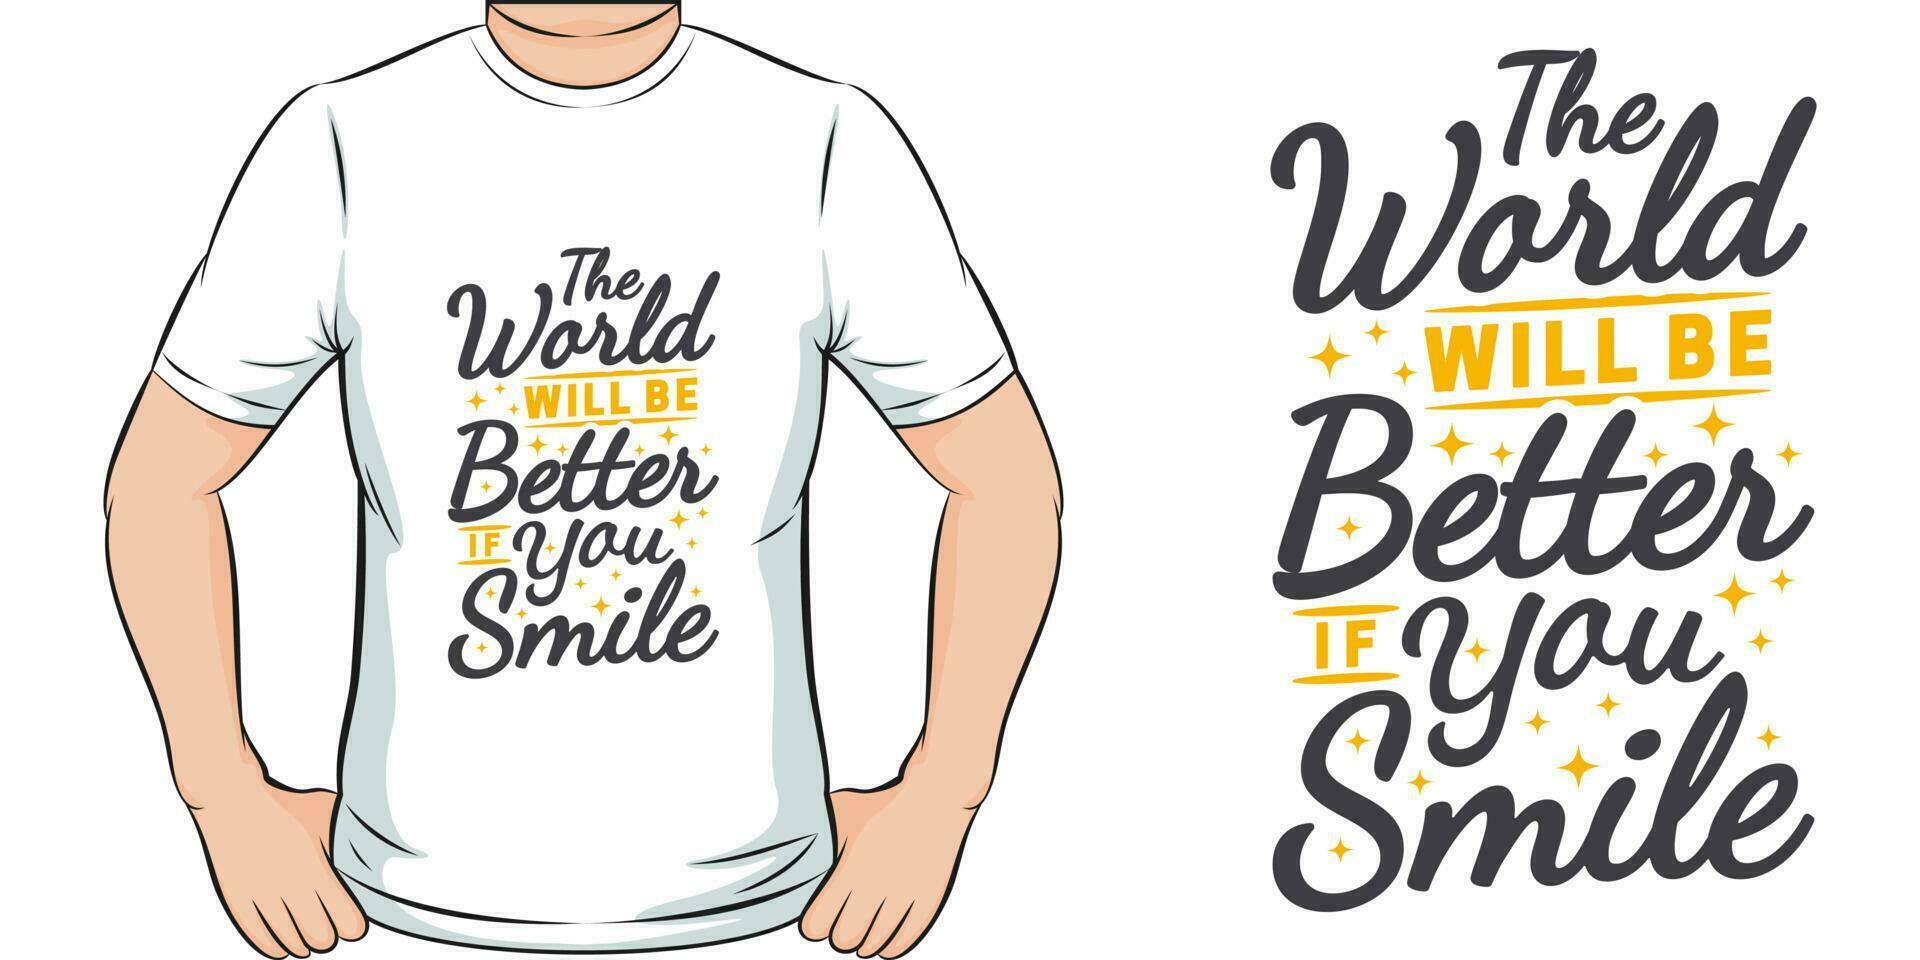 il mondo volontà essere meglio Se voi Sorridi, motivazionale citazione maglietta design. vettore